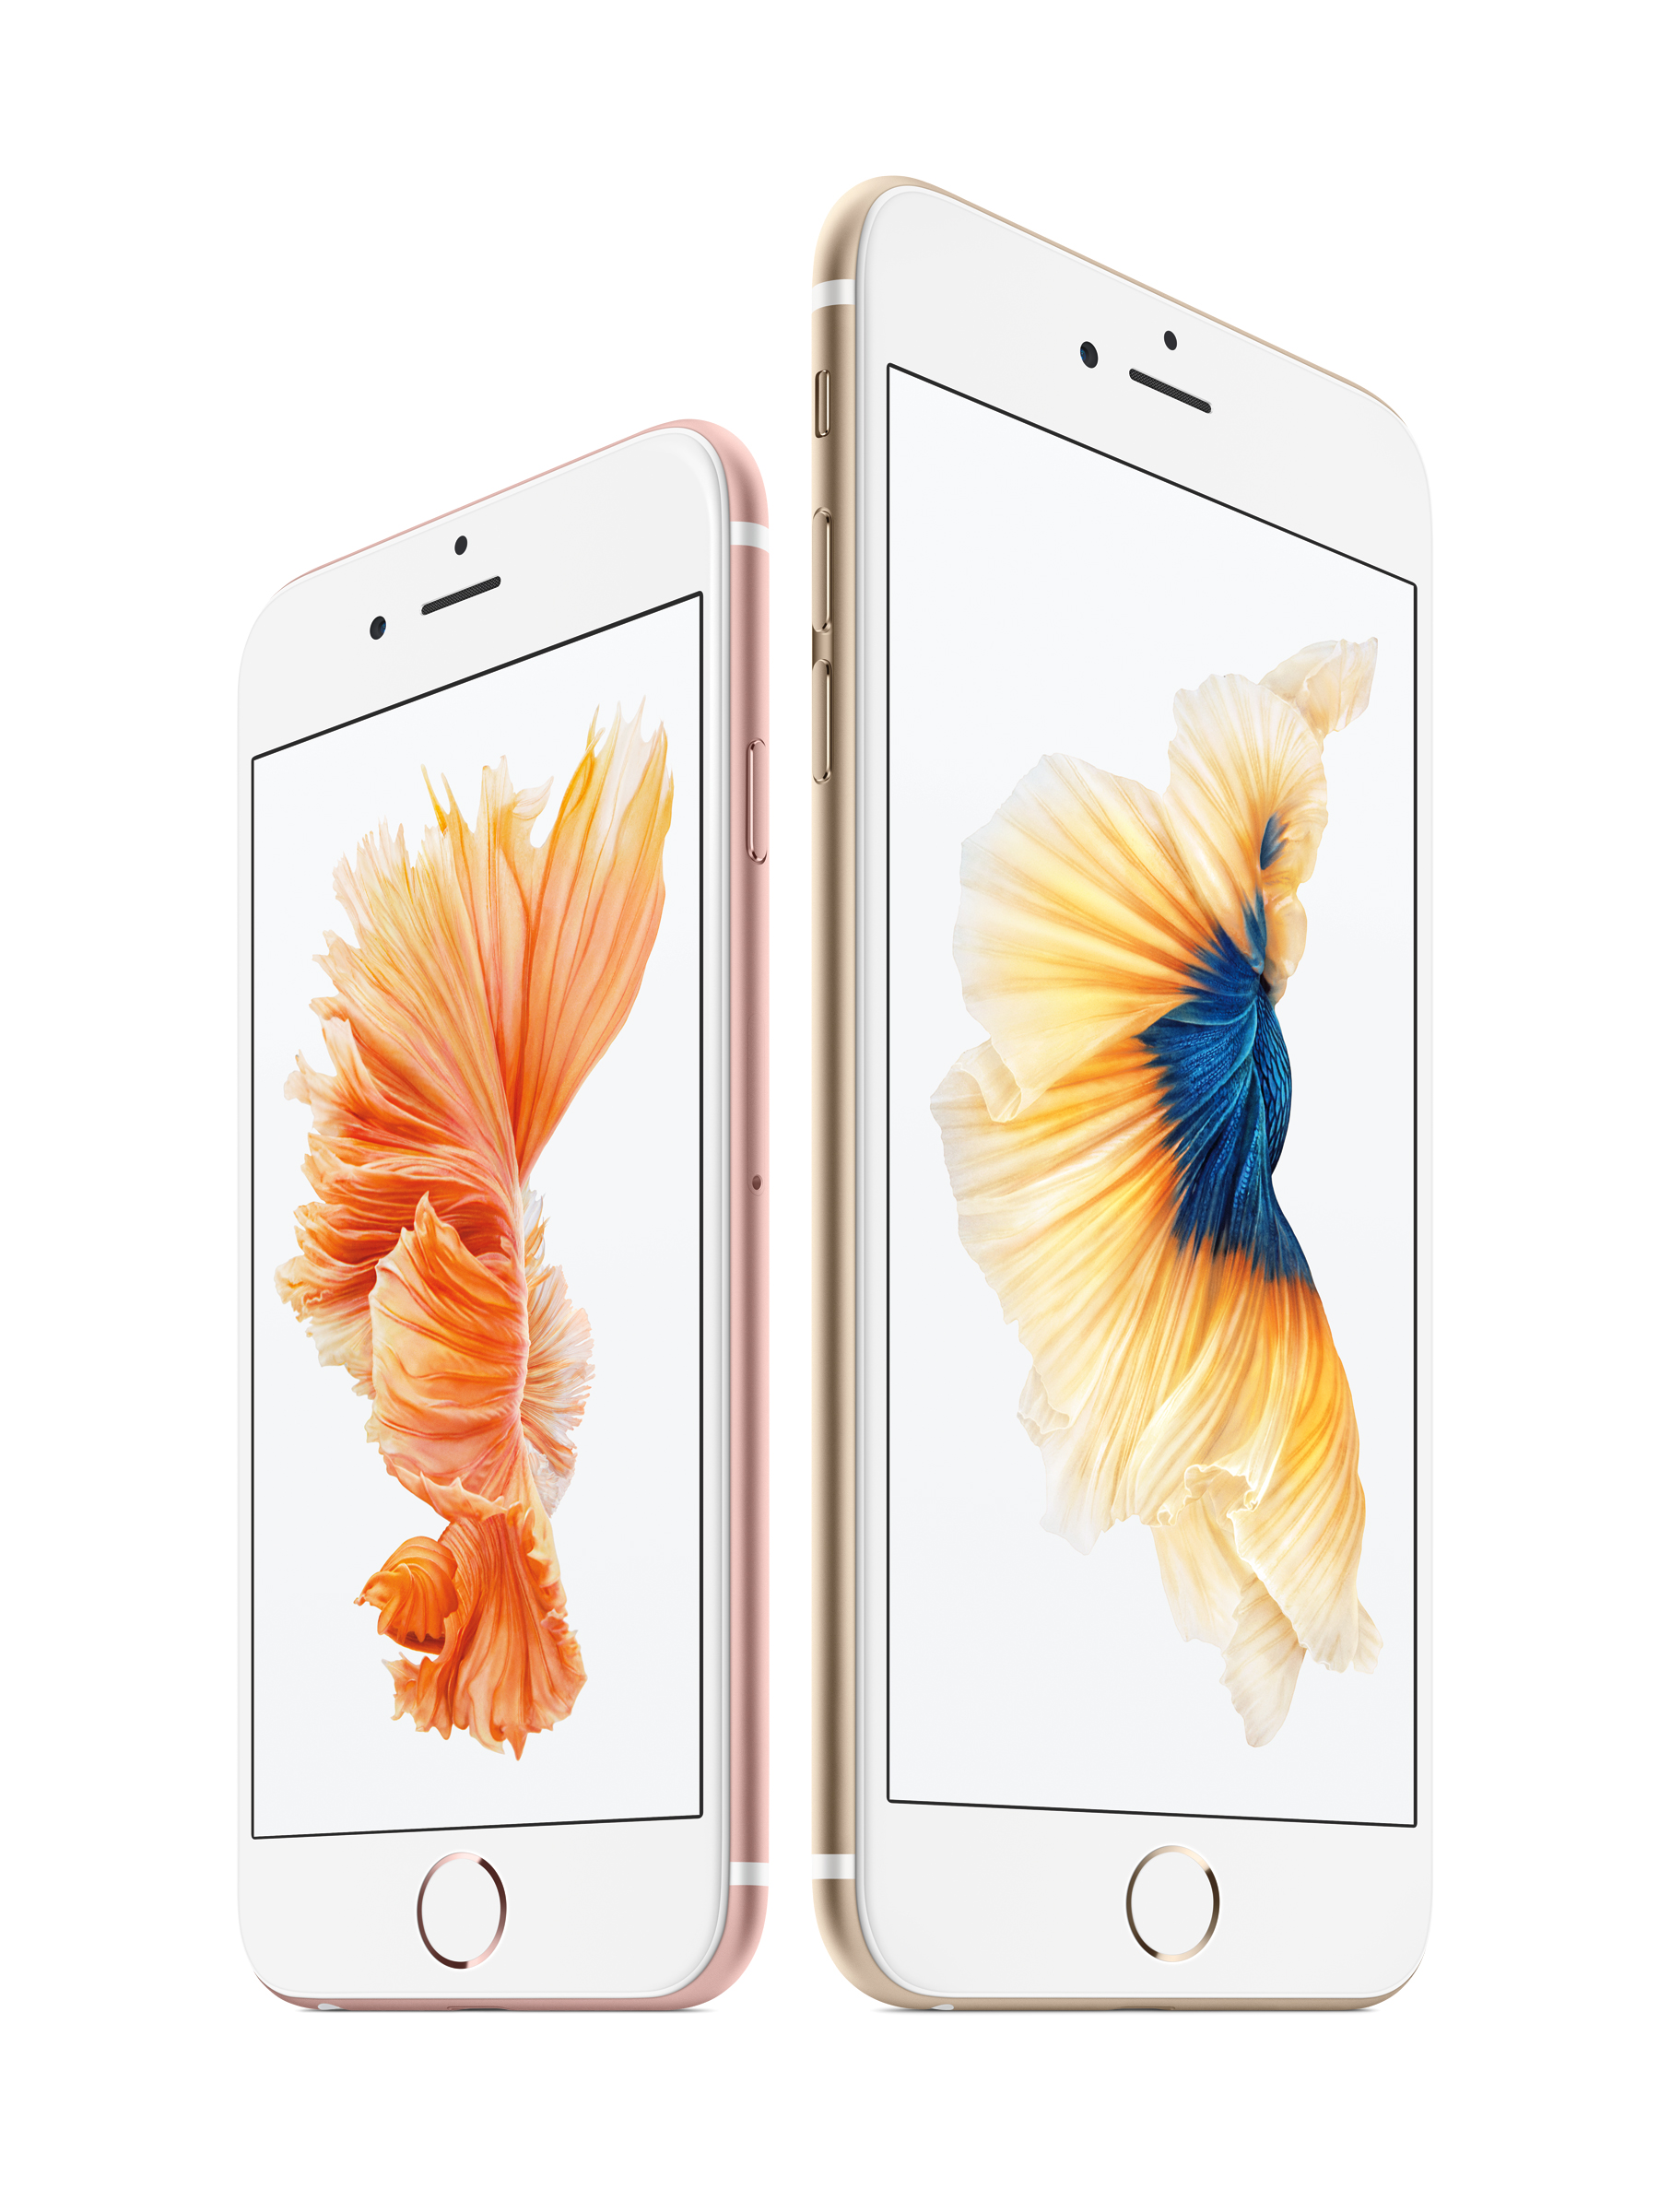 iPhone 6s, iPhone 6s Plus та інші новини від Apple